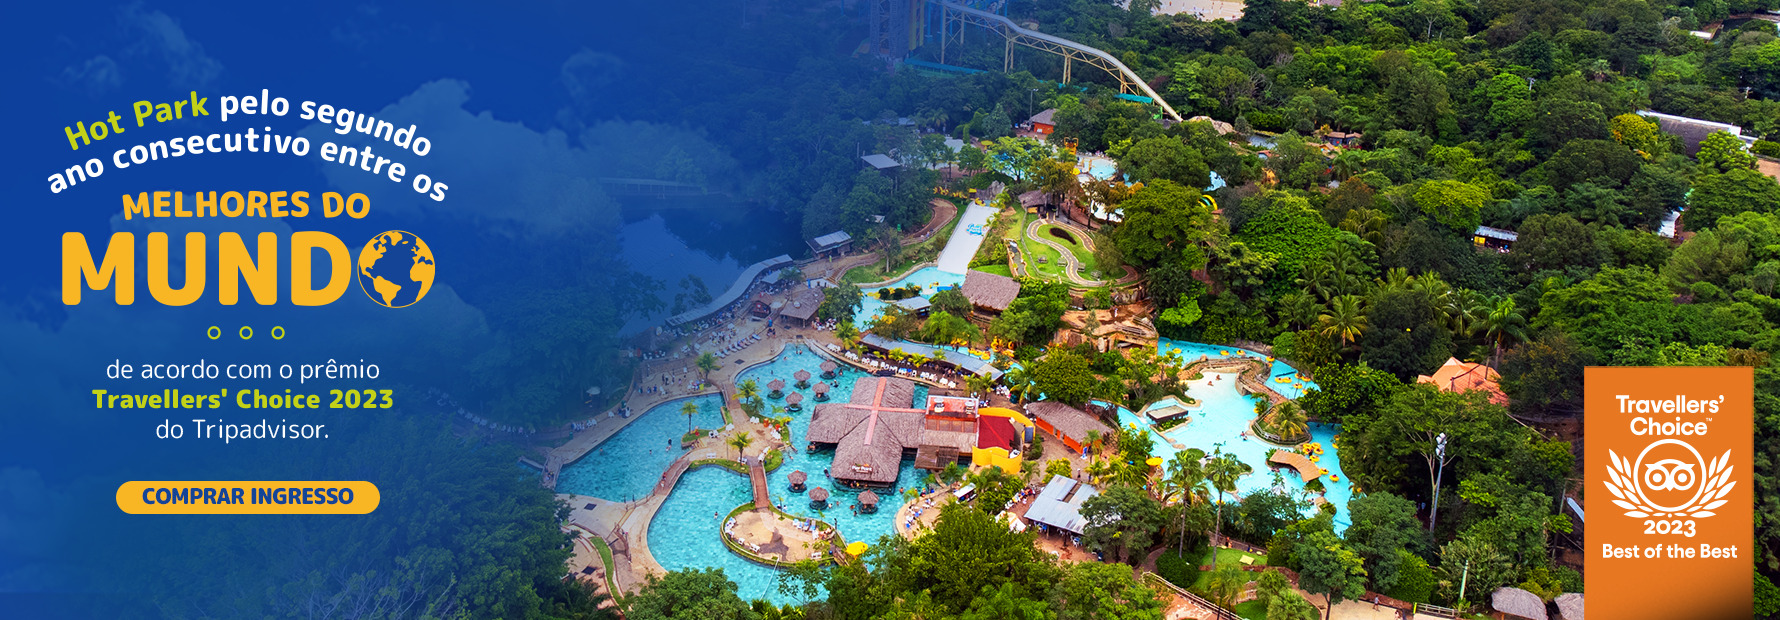 Hot Park foi eleito pelo segundo ano consecutivo entre os melhores parque aquáticos do mundo, de acordo com o prêmio Travellers Choise 2023 do Tripadvisor. Compre seu ingresso aqui!